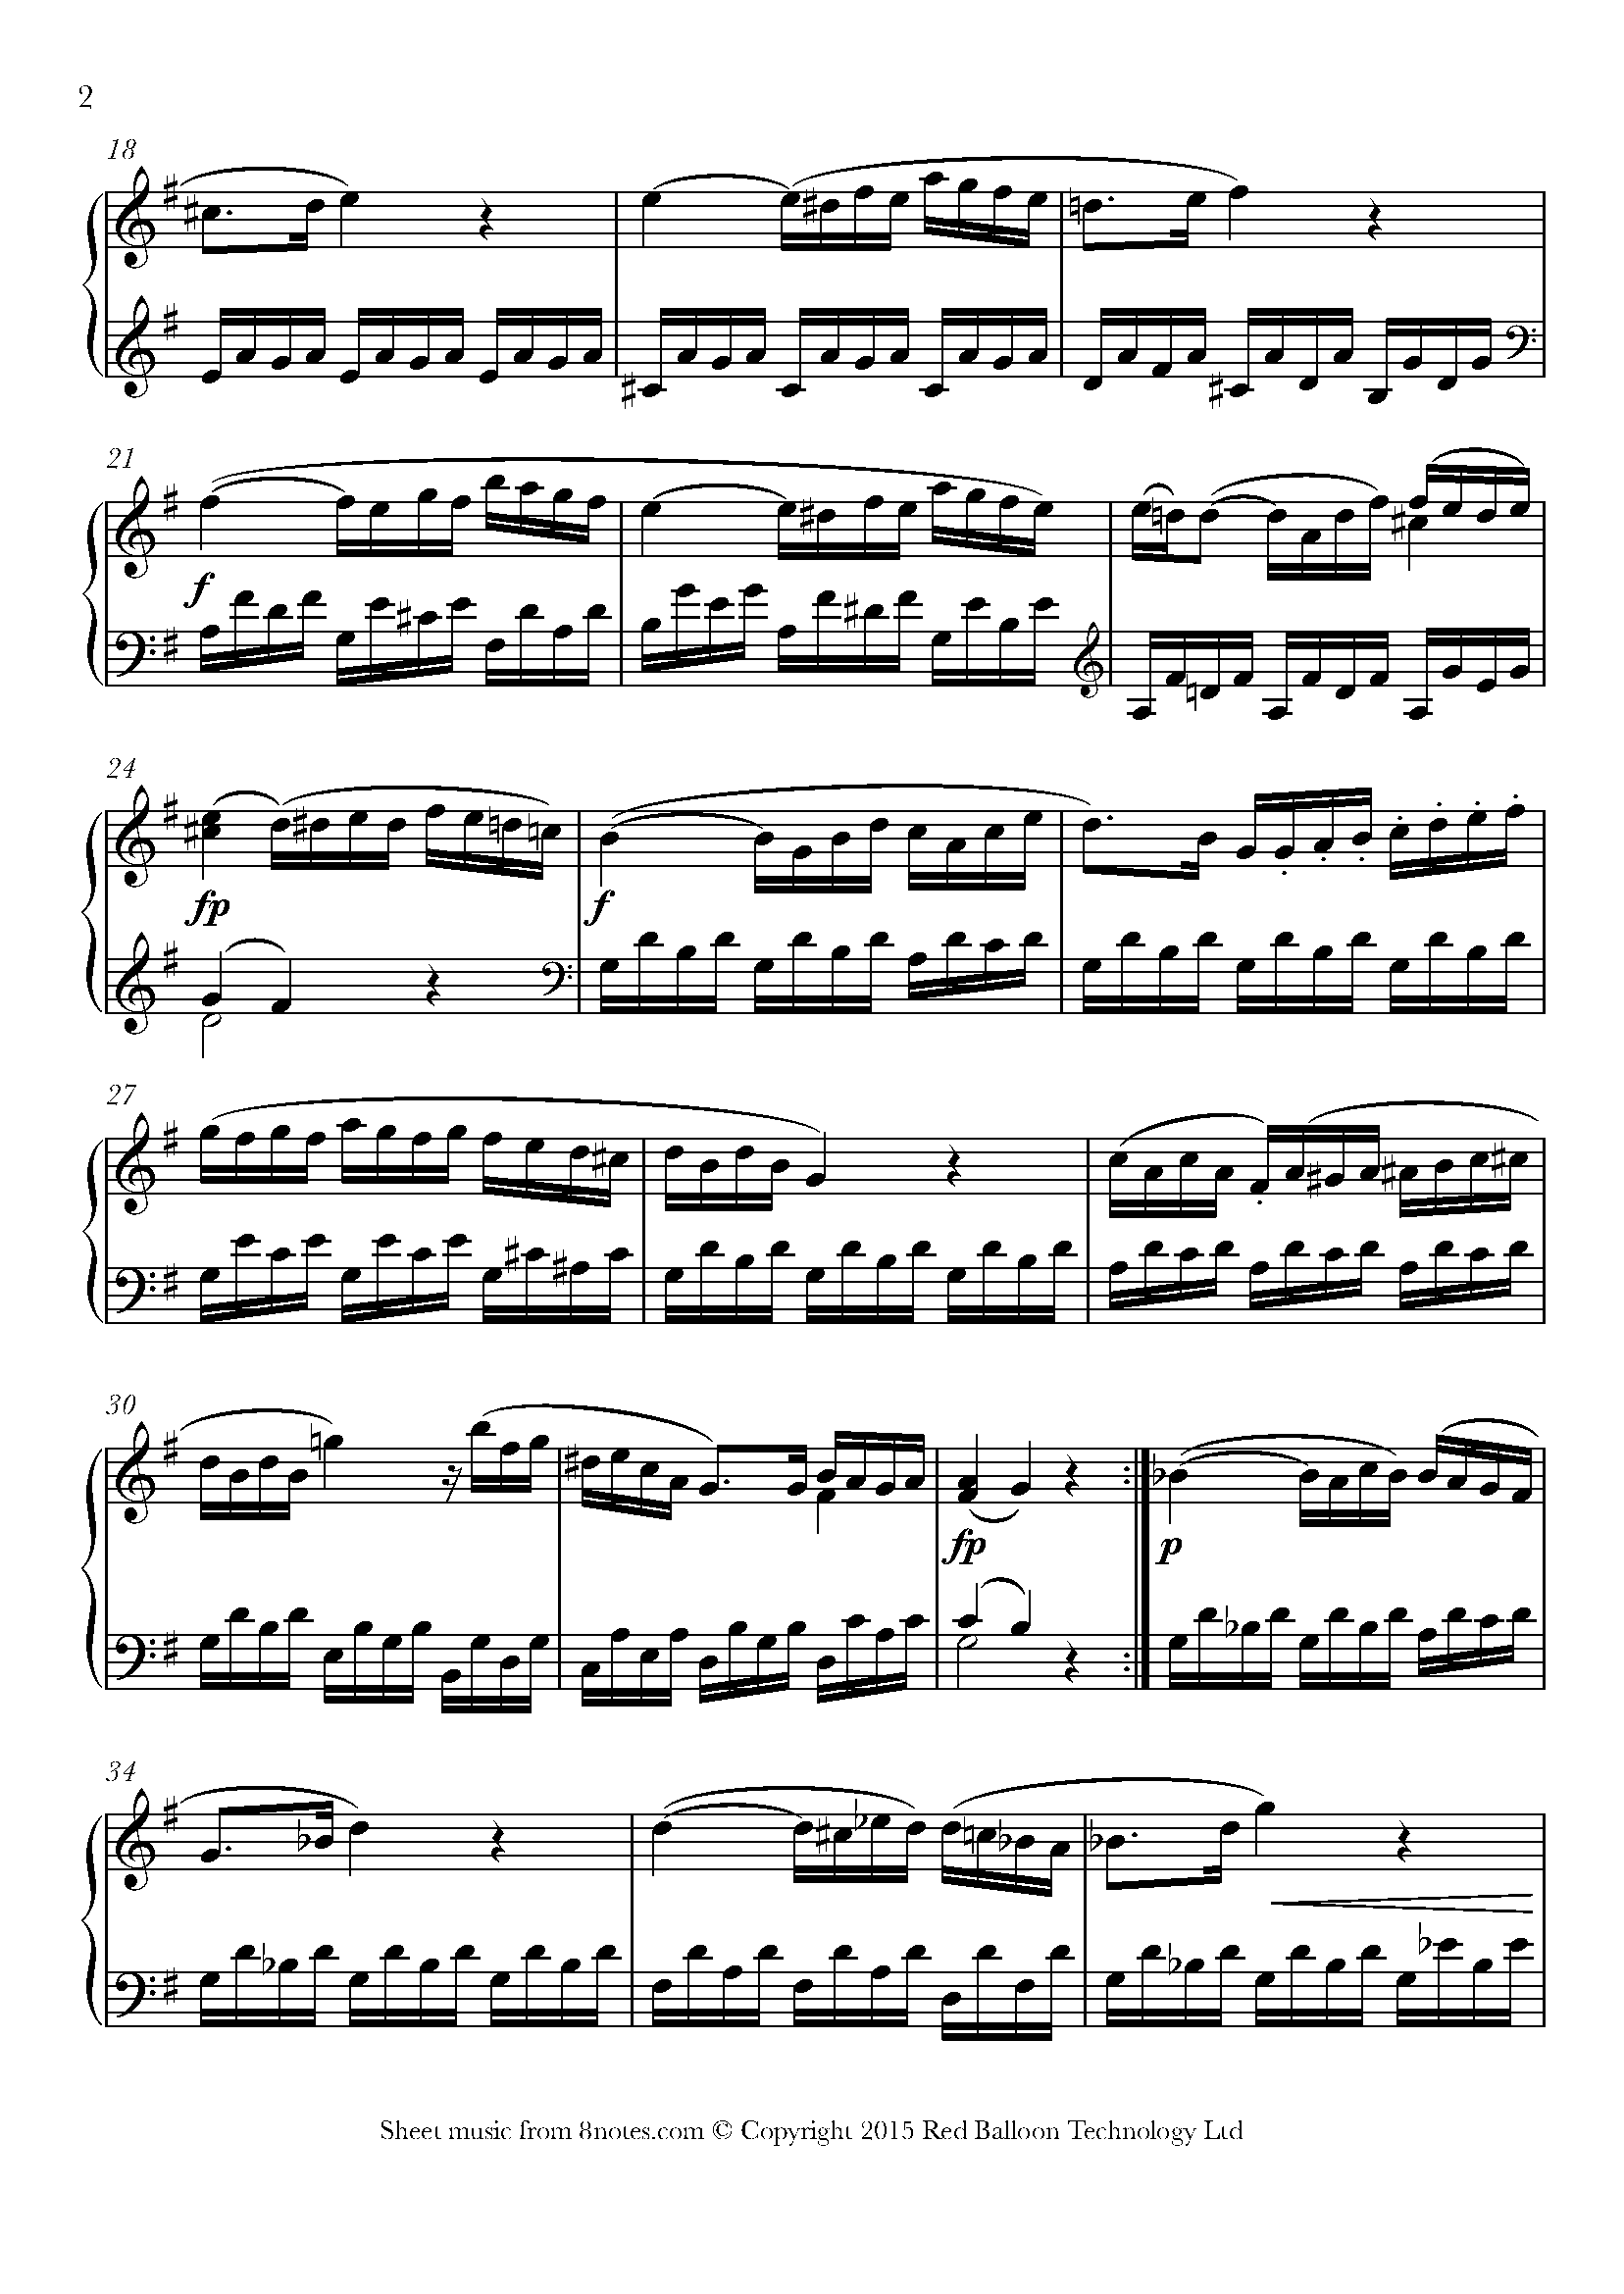 Mozart Sonata No 16 K 545 2nd Movement Sheet Music For Piano 8notes Com